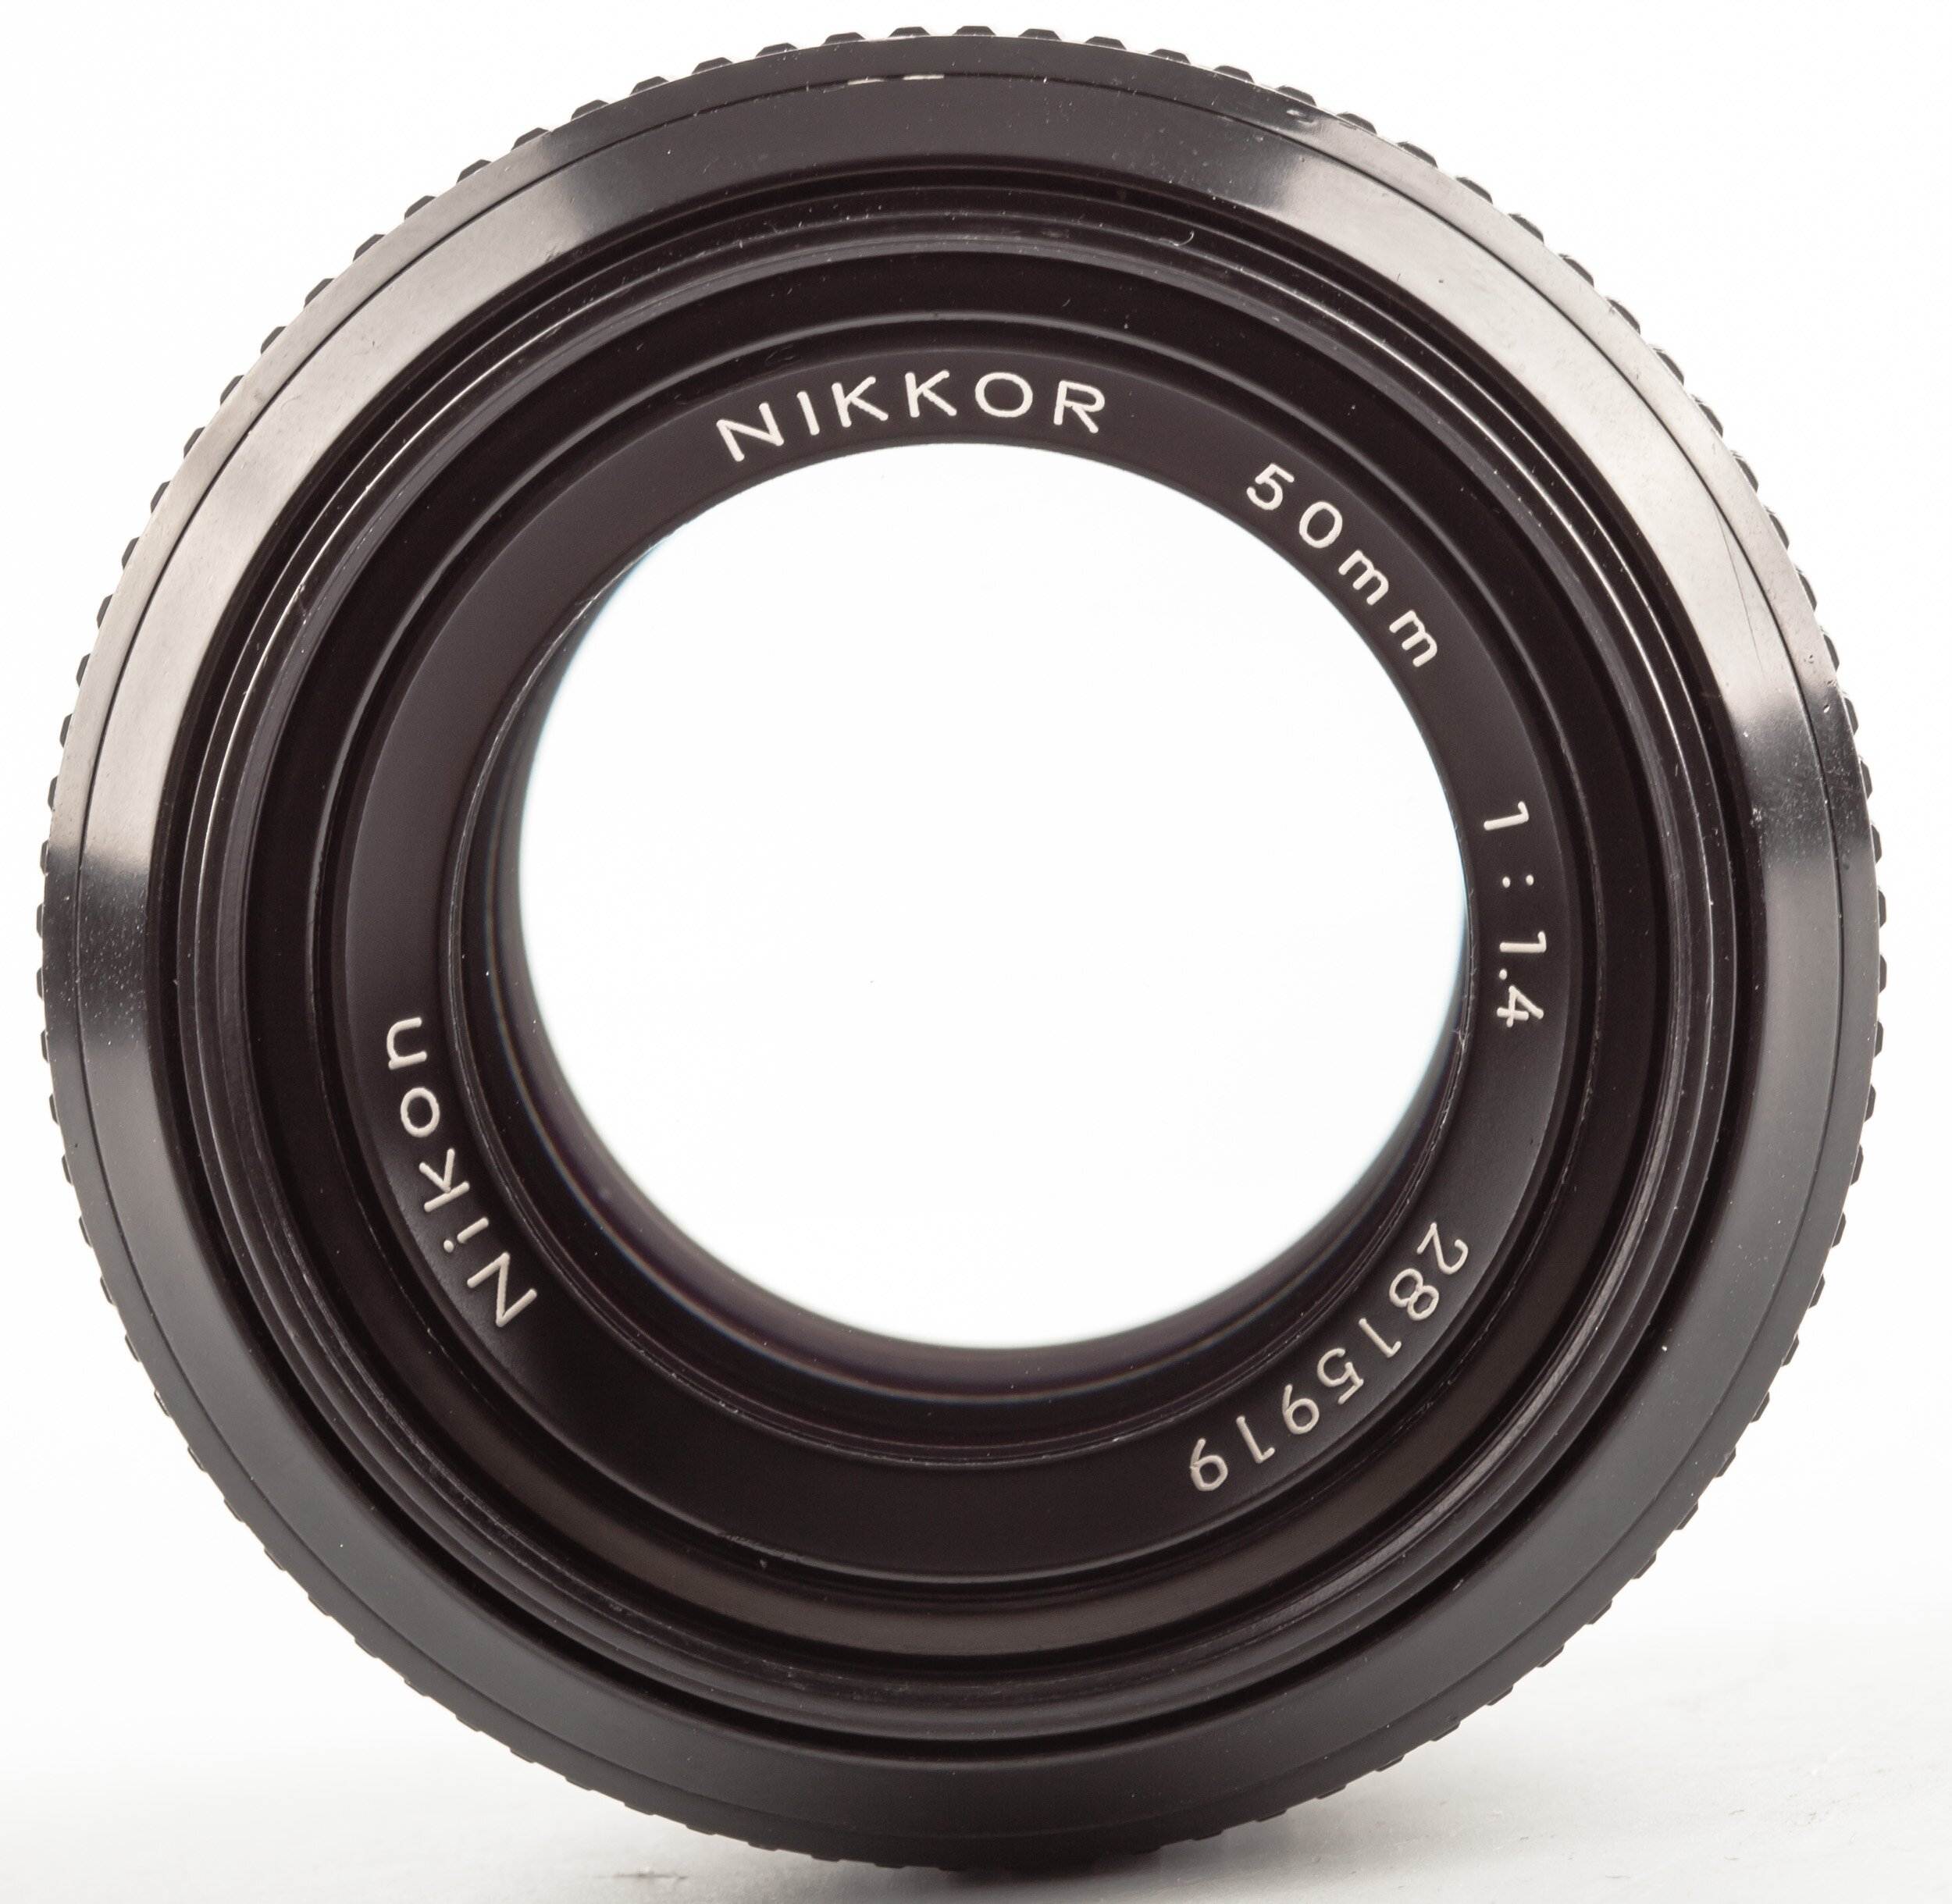 Nikon 50mm F1.4 Nikkor non AF